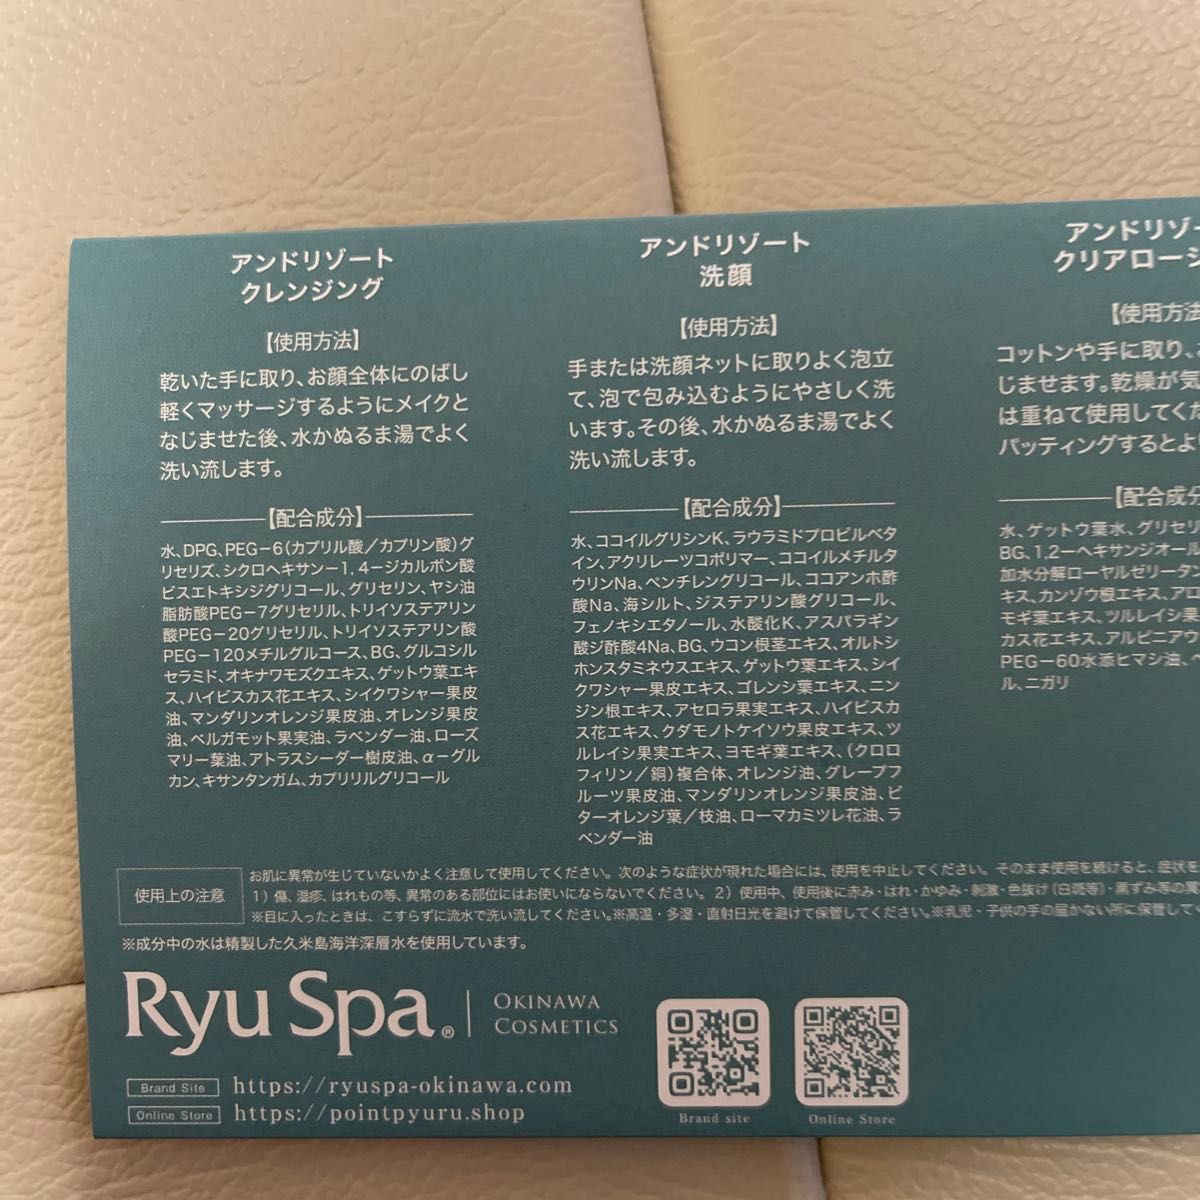 Ryu Spa トラベルキット スキンケア アパホテル アンドリゾート 8セット